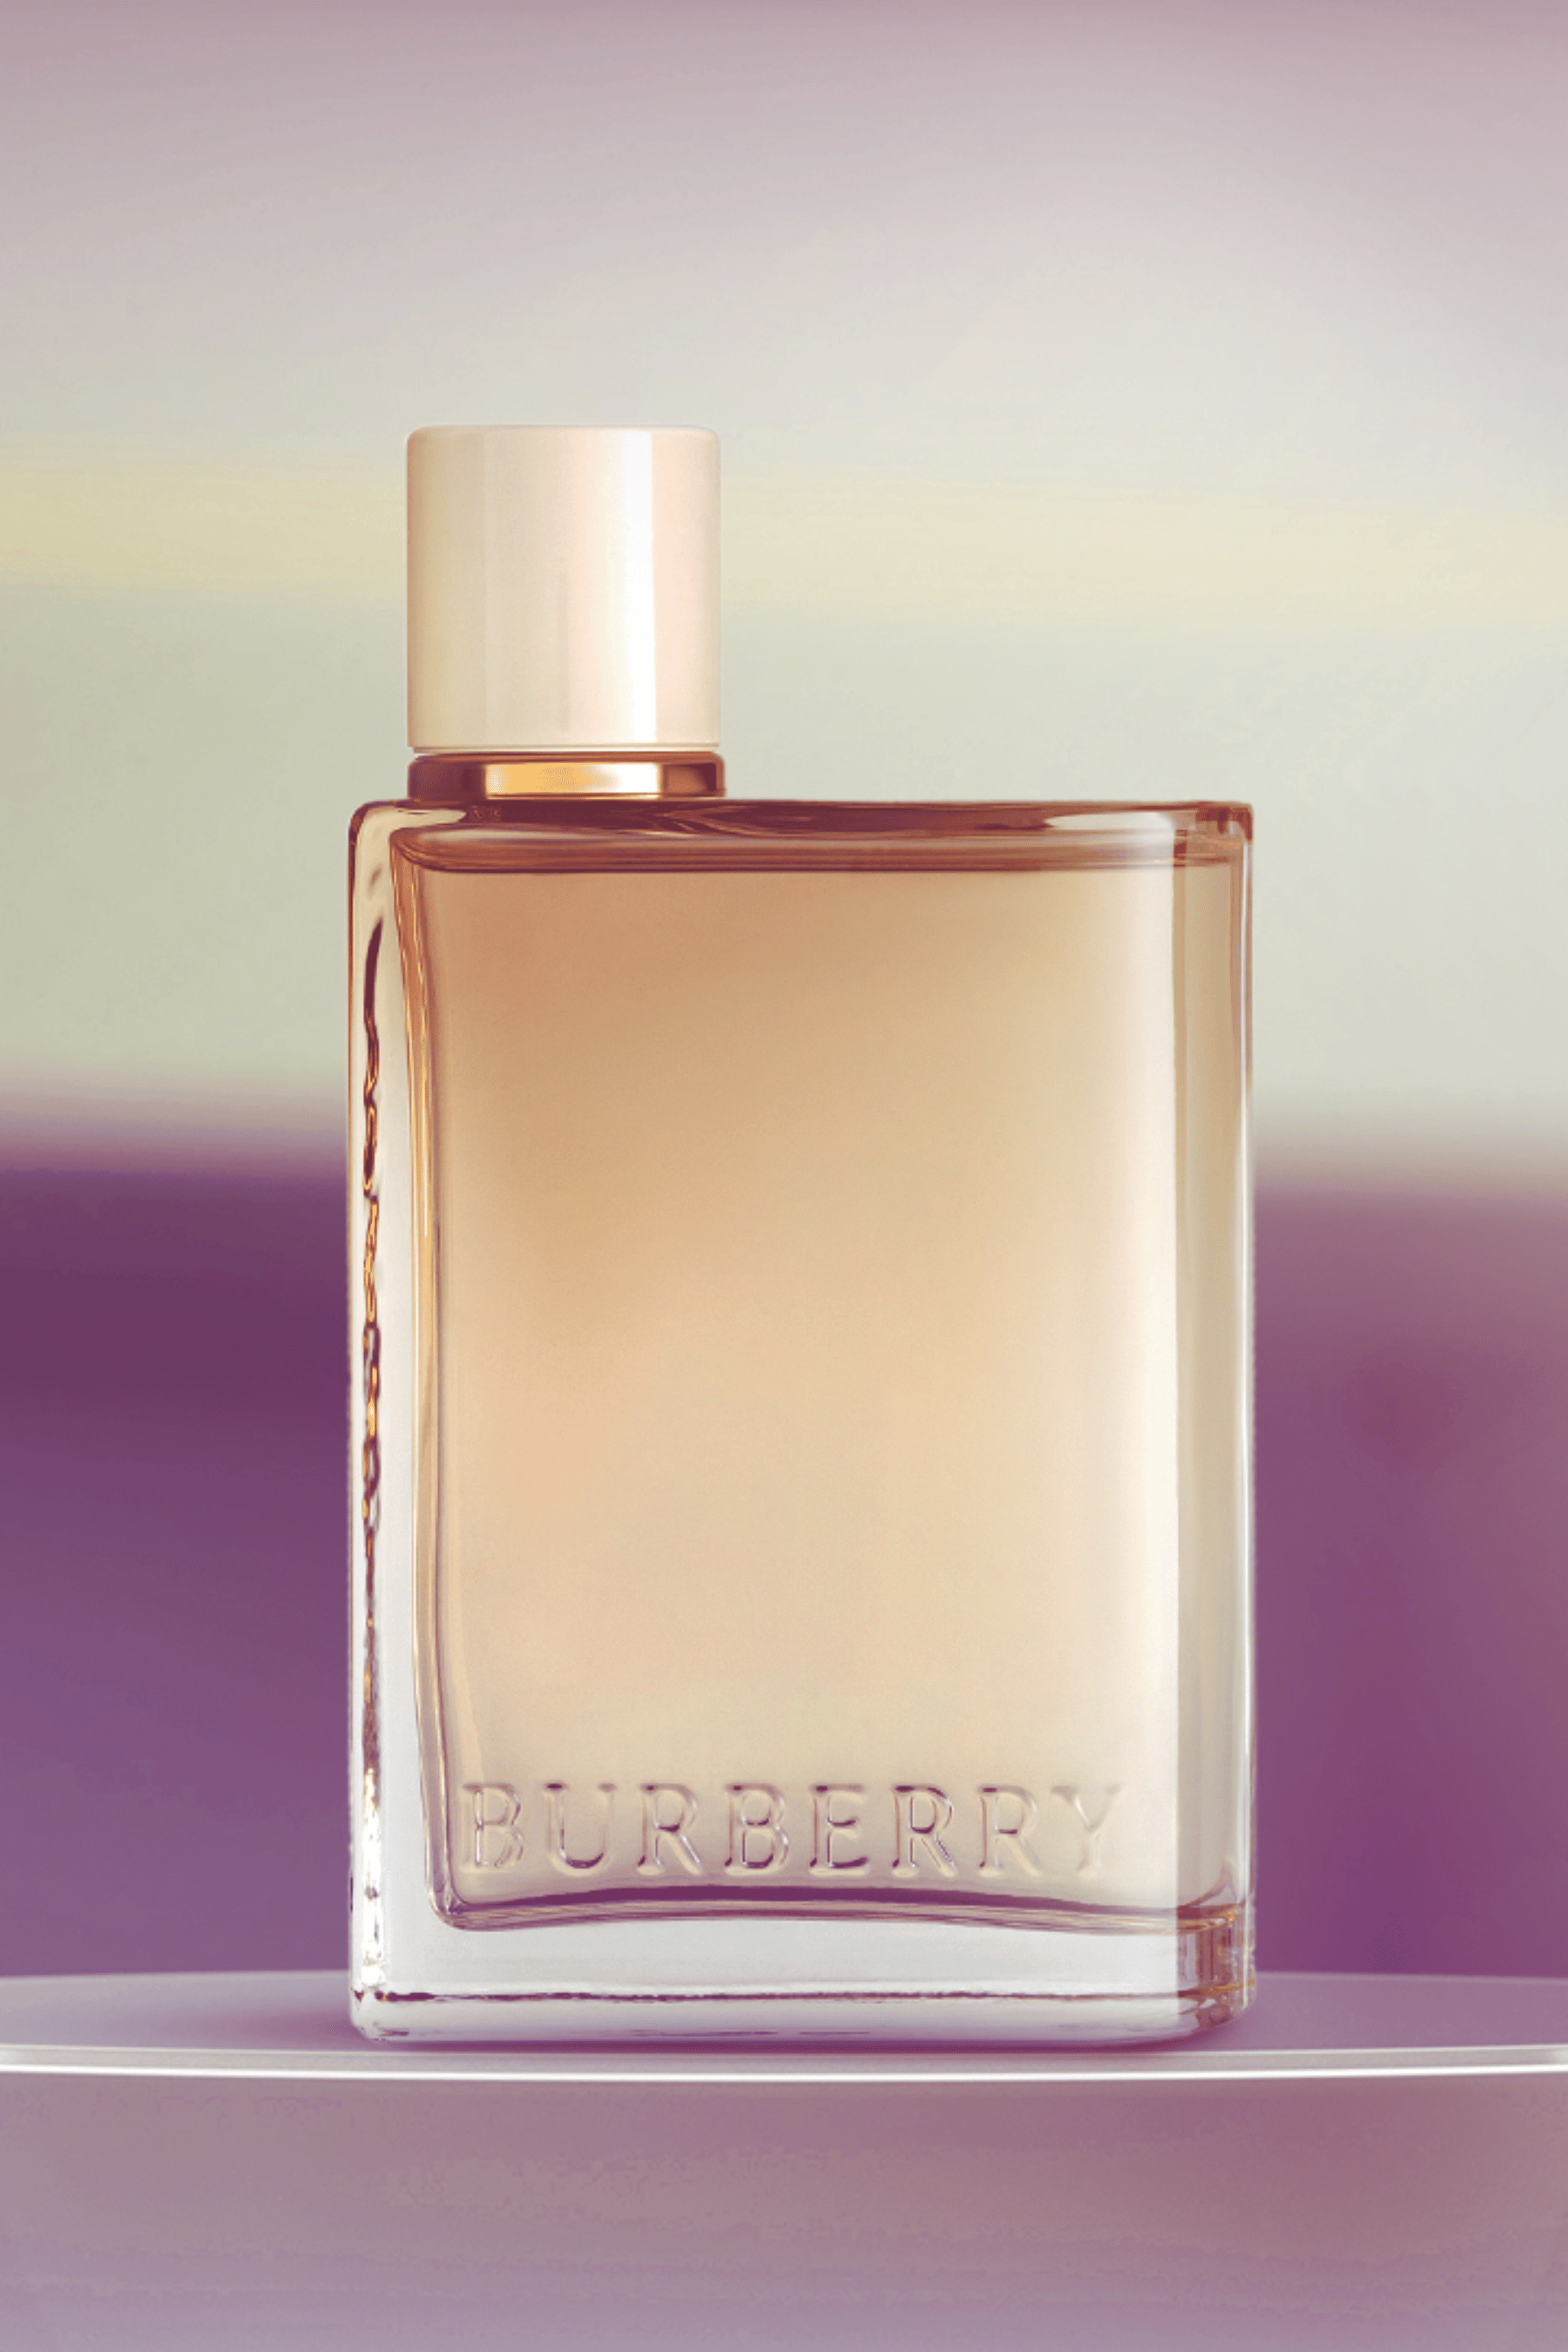 Burberry | Her London Dream Eau de Parfum - REBL | Eau de Parfum